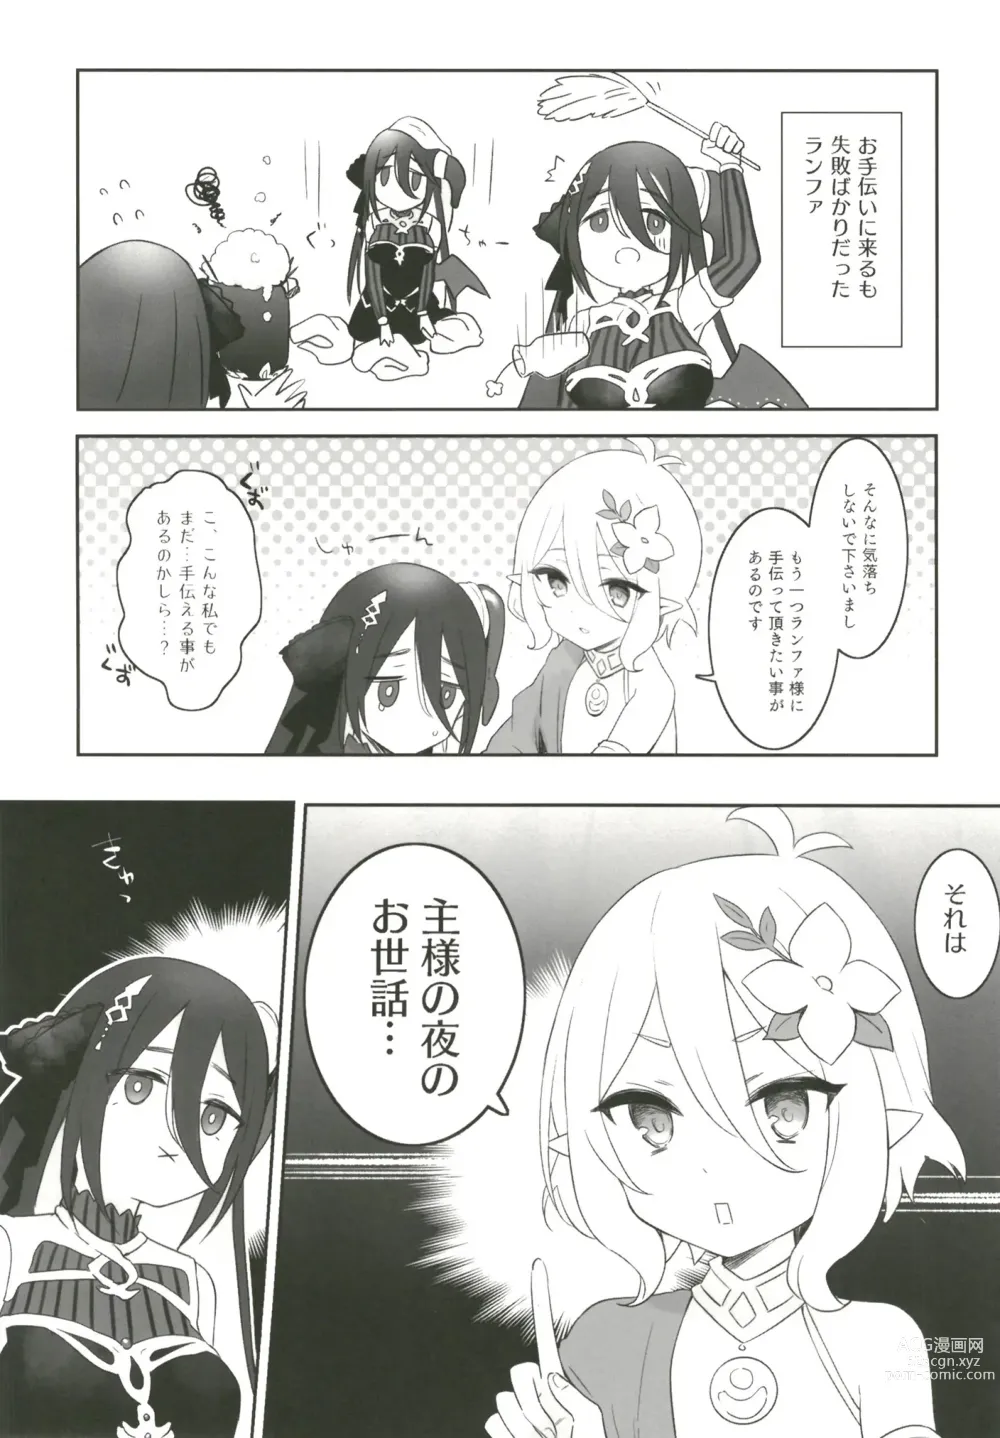 Page 3 of doujinshi Kokkoro to Ranpha no Yoru no Osewa